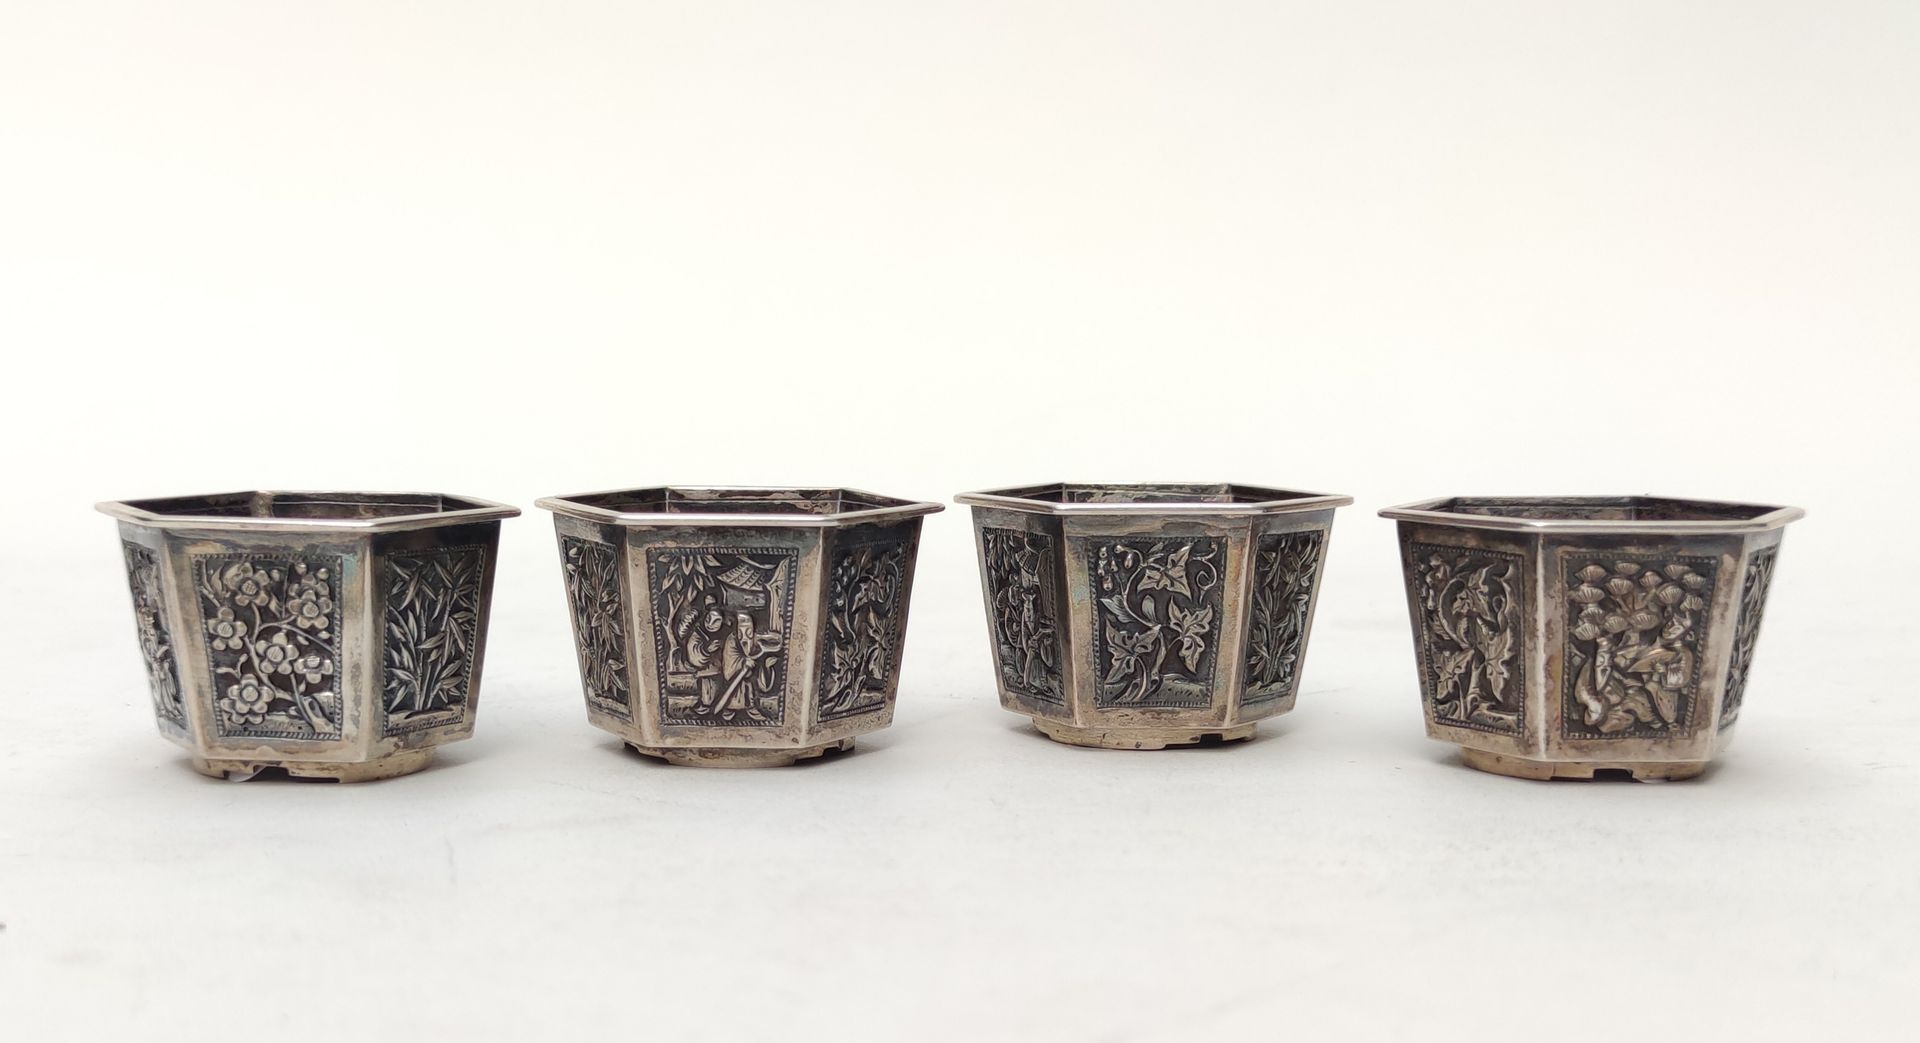 Null 王兴

一套4个六角形的银质萨克斯杯，上面有人物、竹子和樱花的装饰。

在每个高脚杯的背面做标记

总重量：105.5克

(免于管制，每杯重量小于3&hellip;